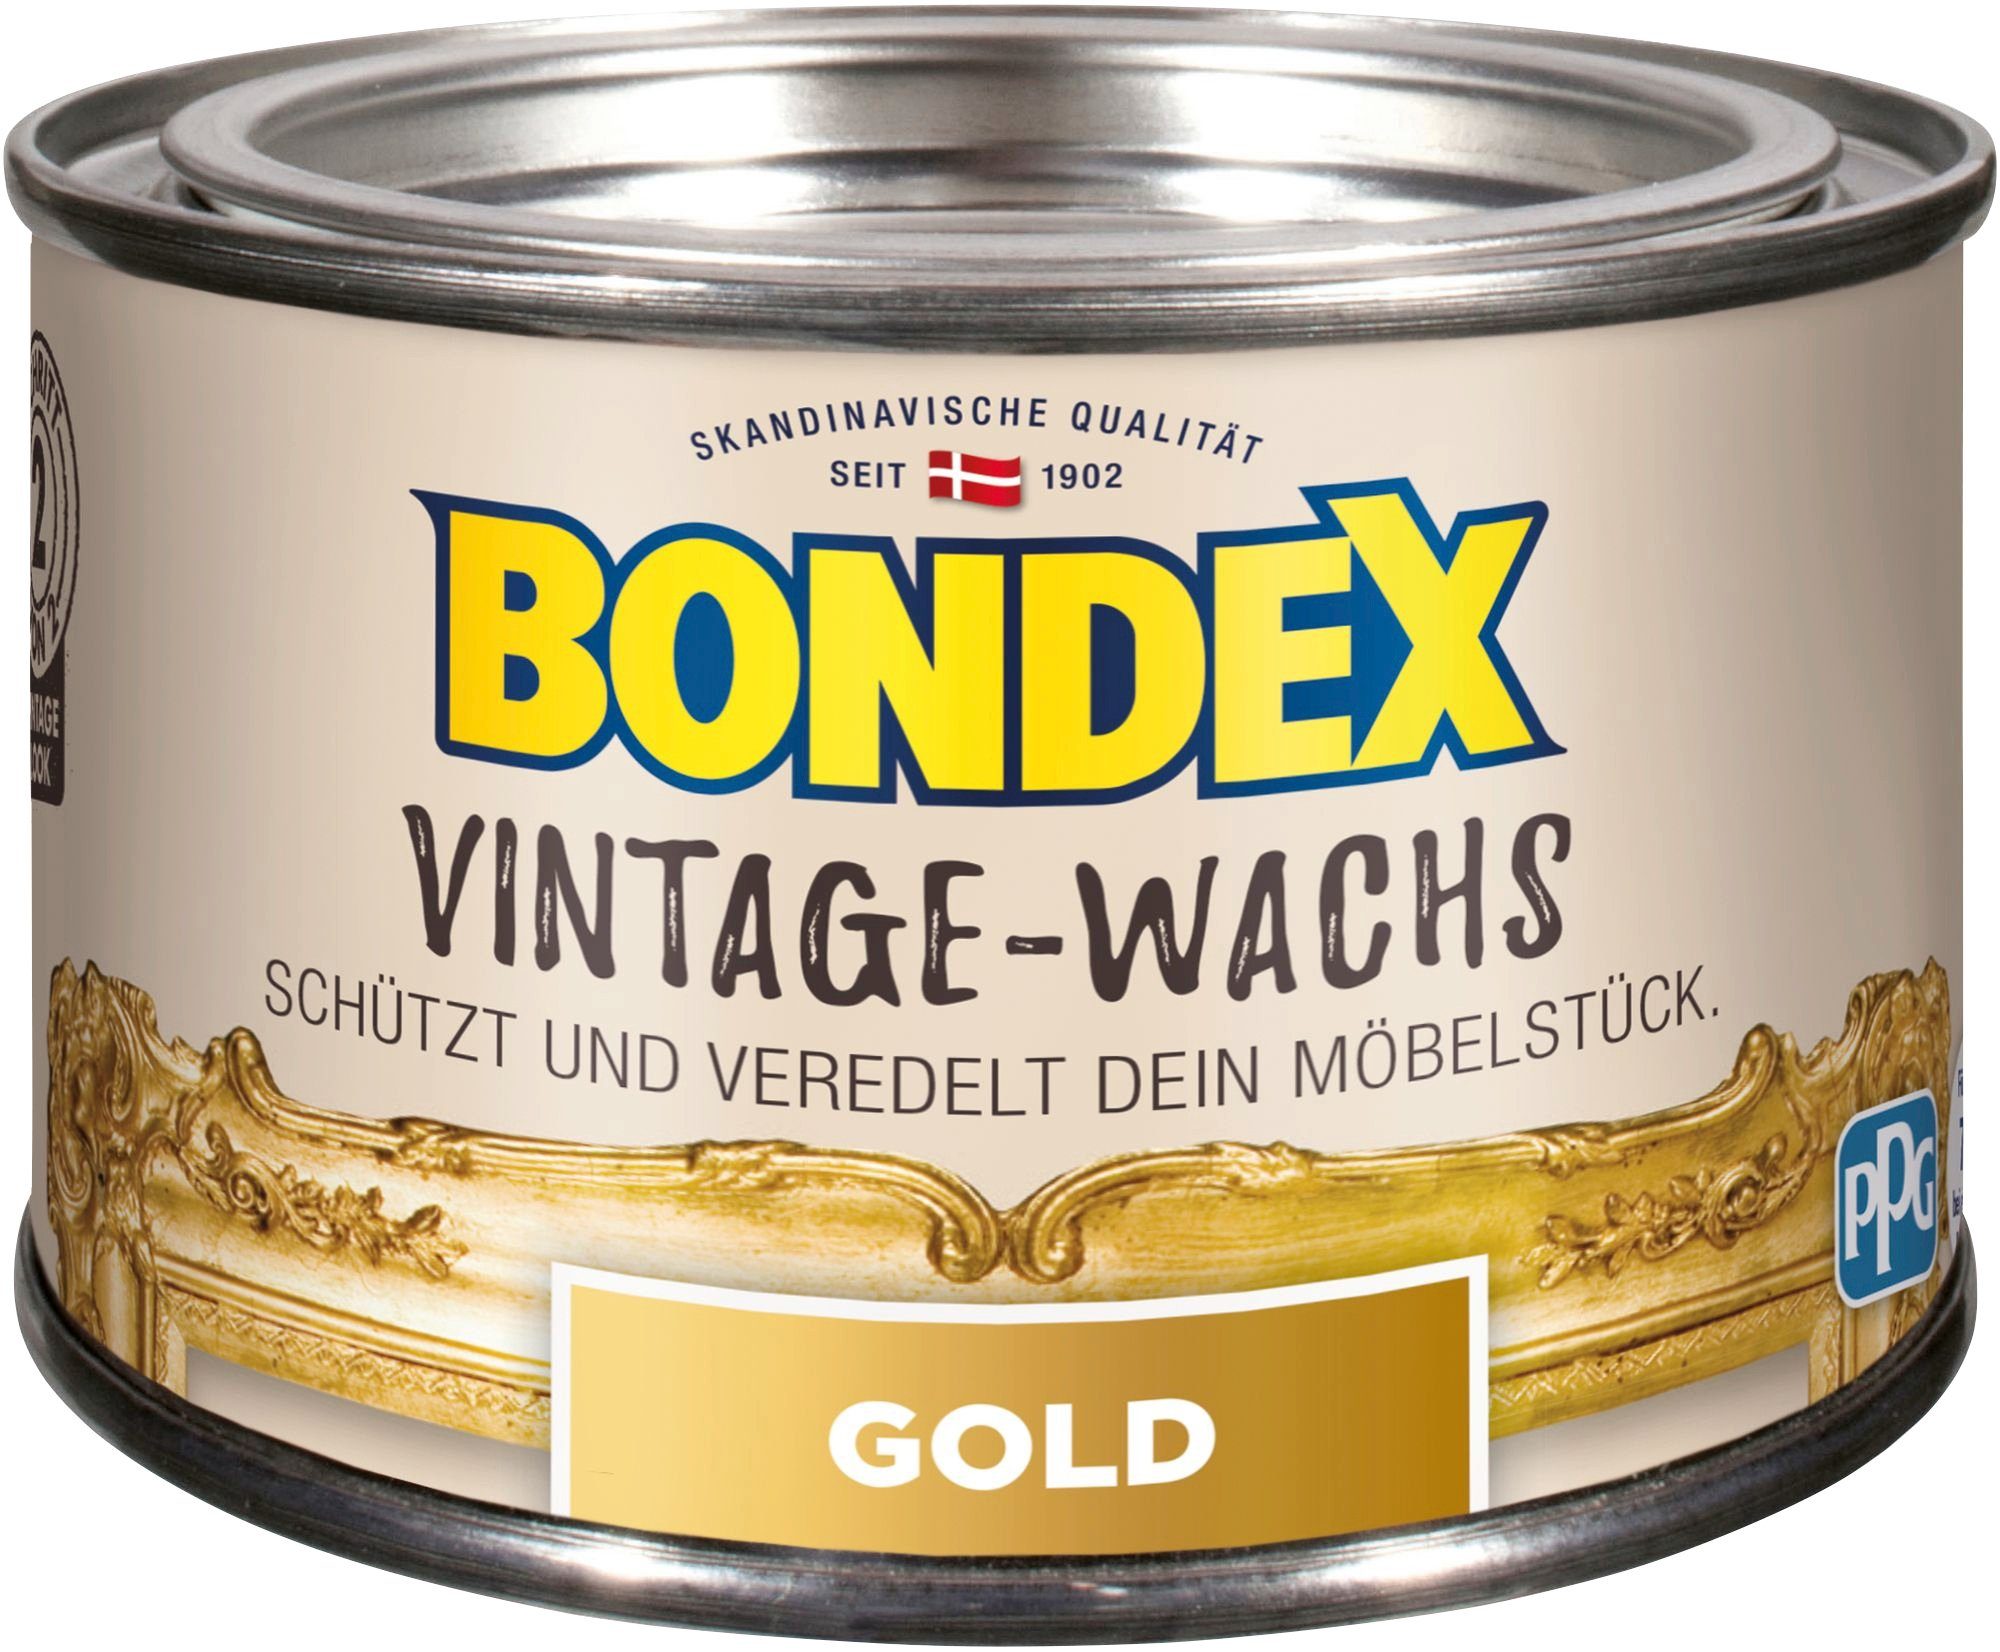 Bondex VINTAGE-WACHS 0,25 Grau und Schutz goldfarben Schutzwachs, zum l Veredelung der Möbelstücke